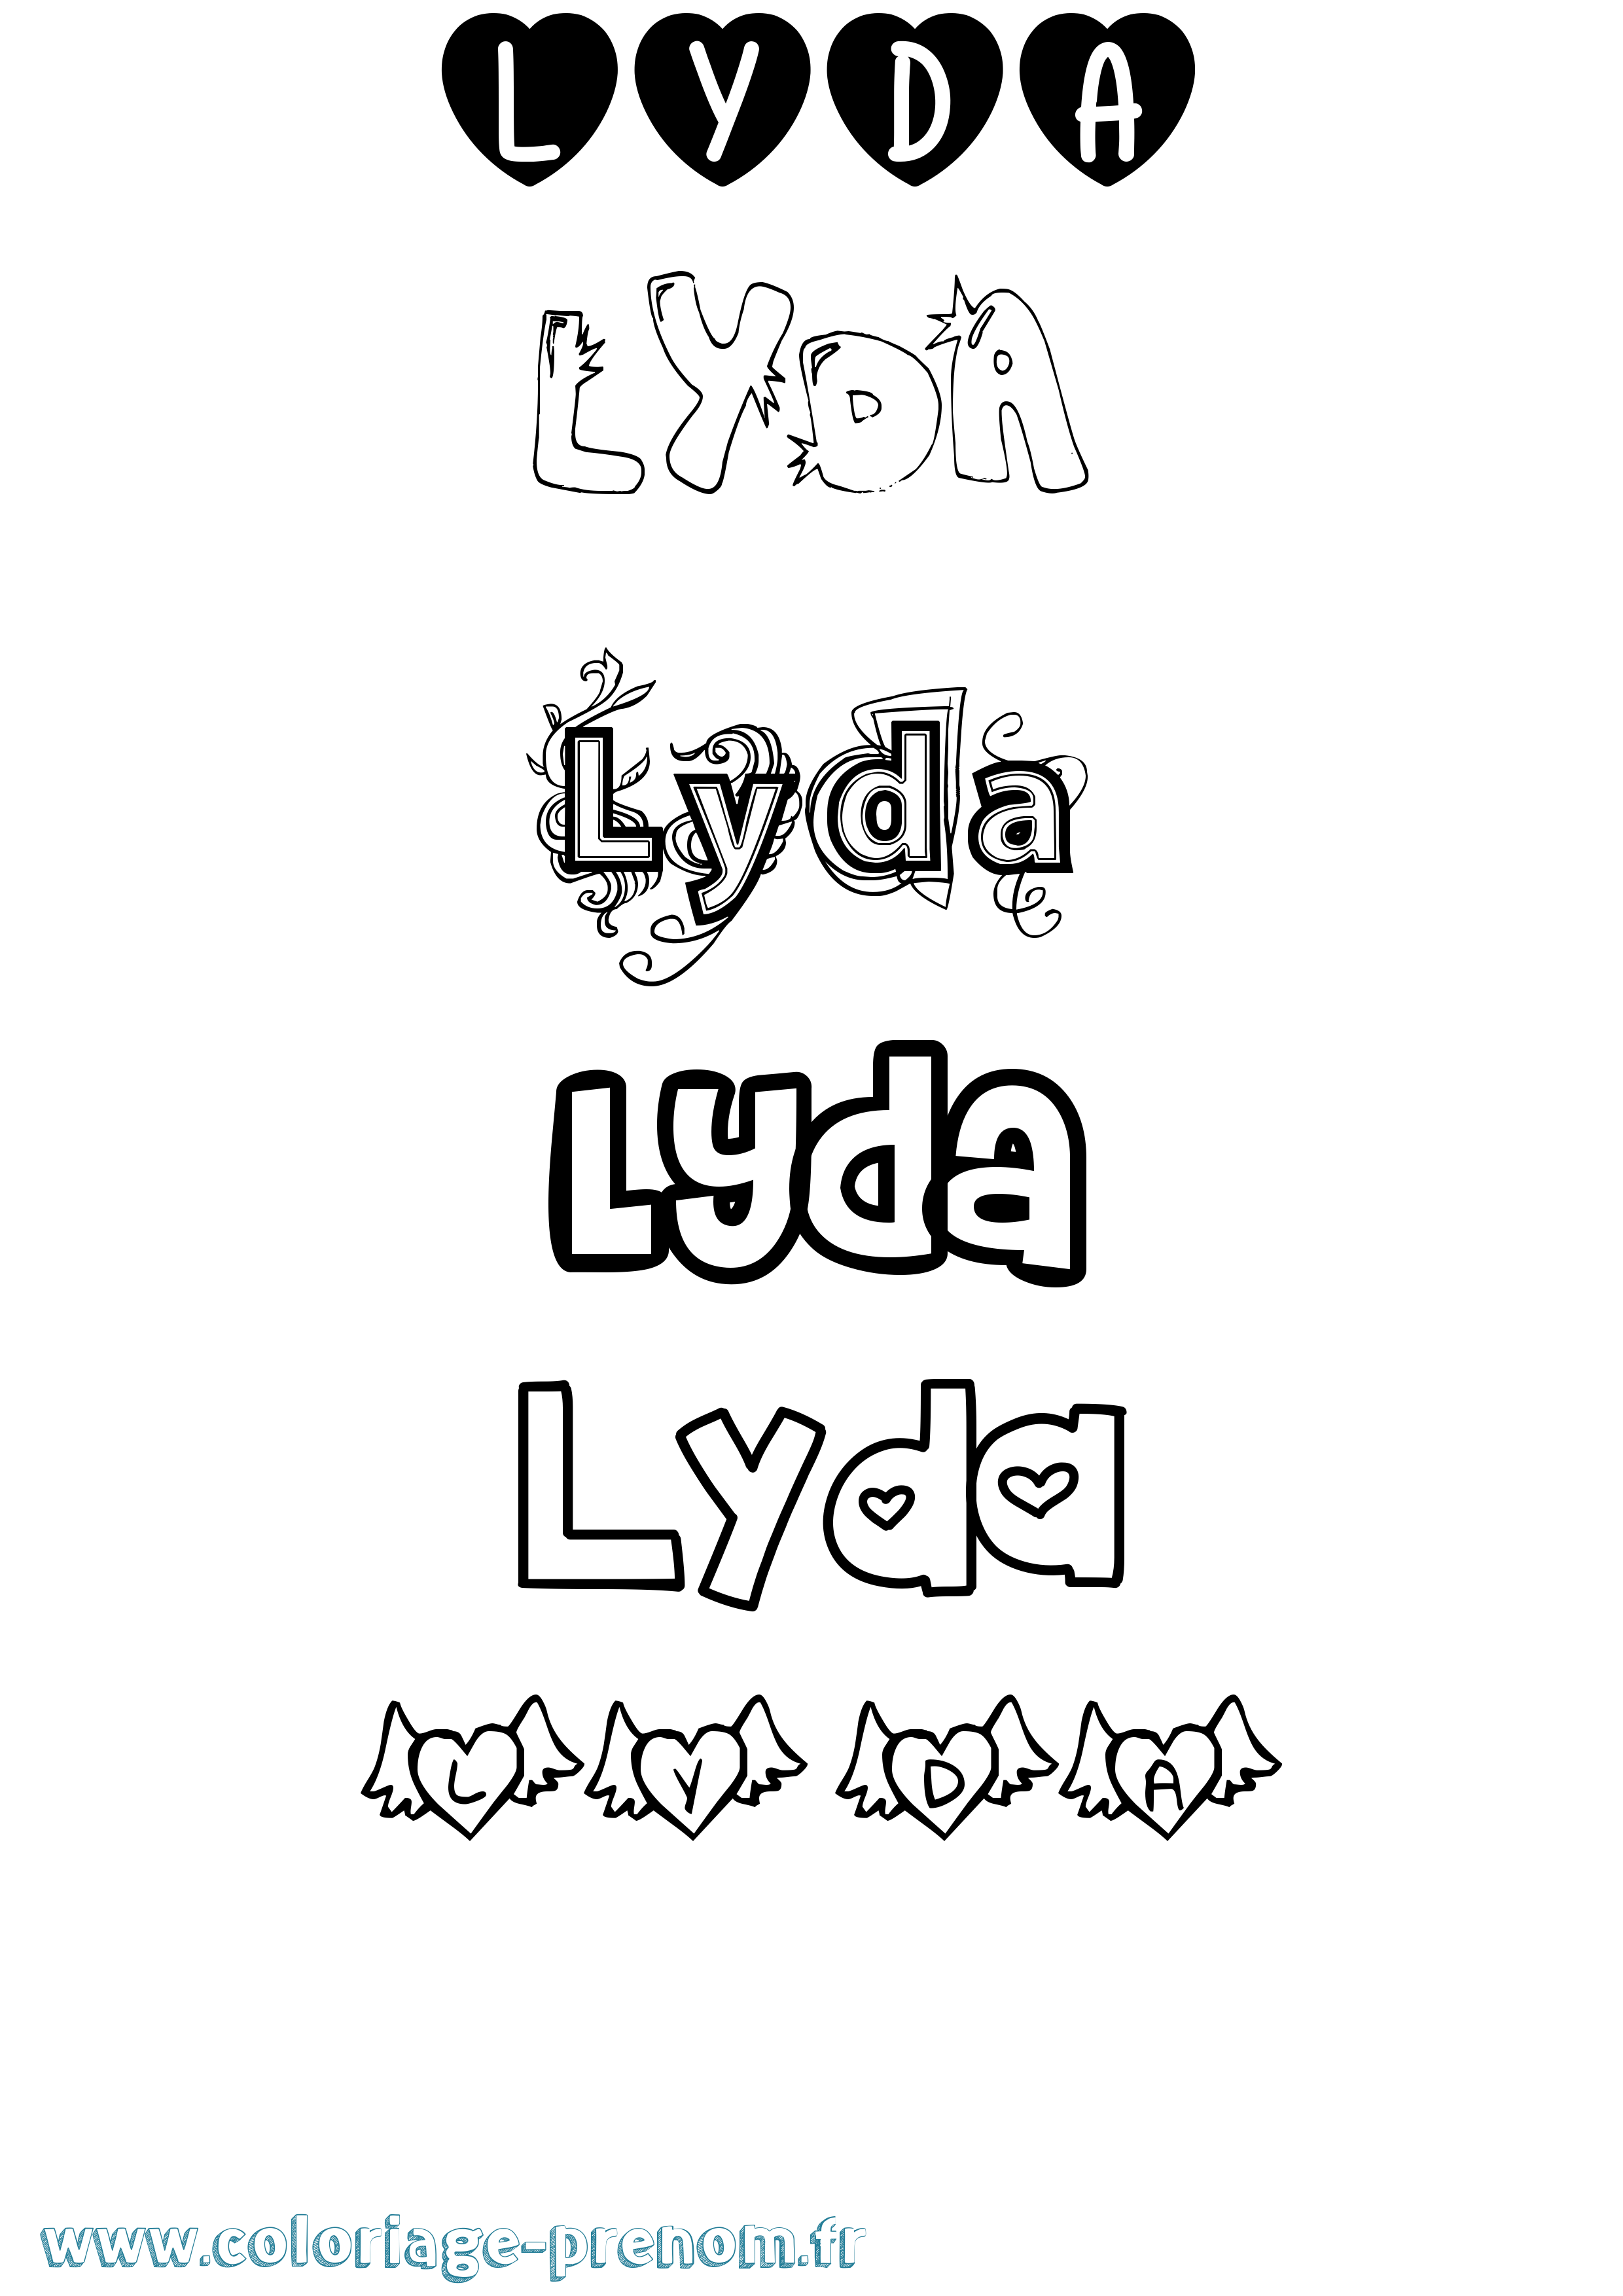 Coloriage prénom Lyda Girly